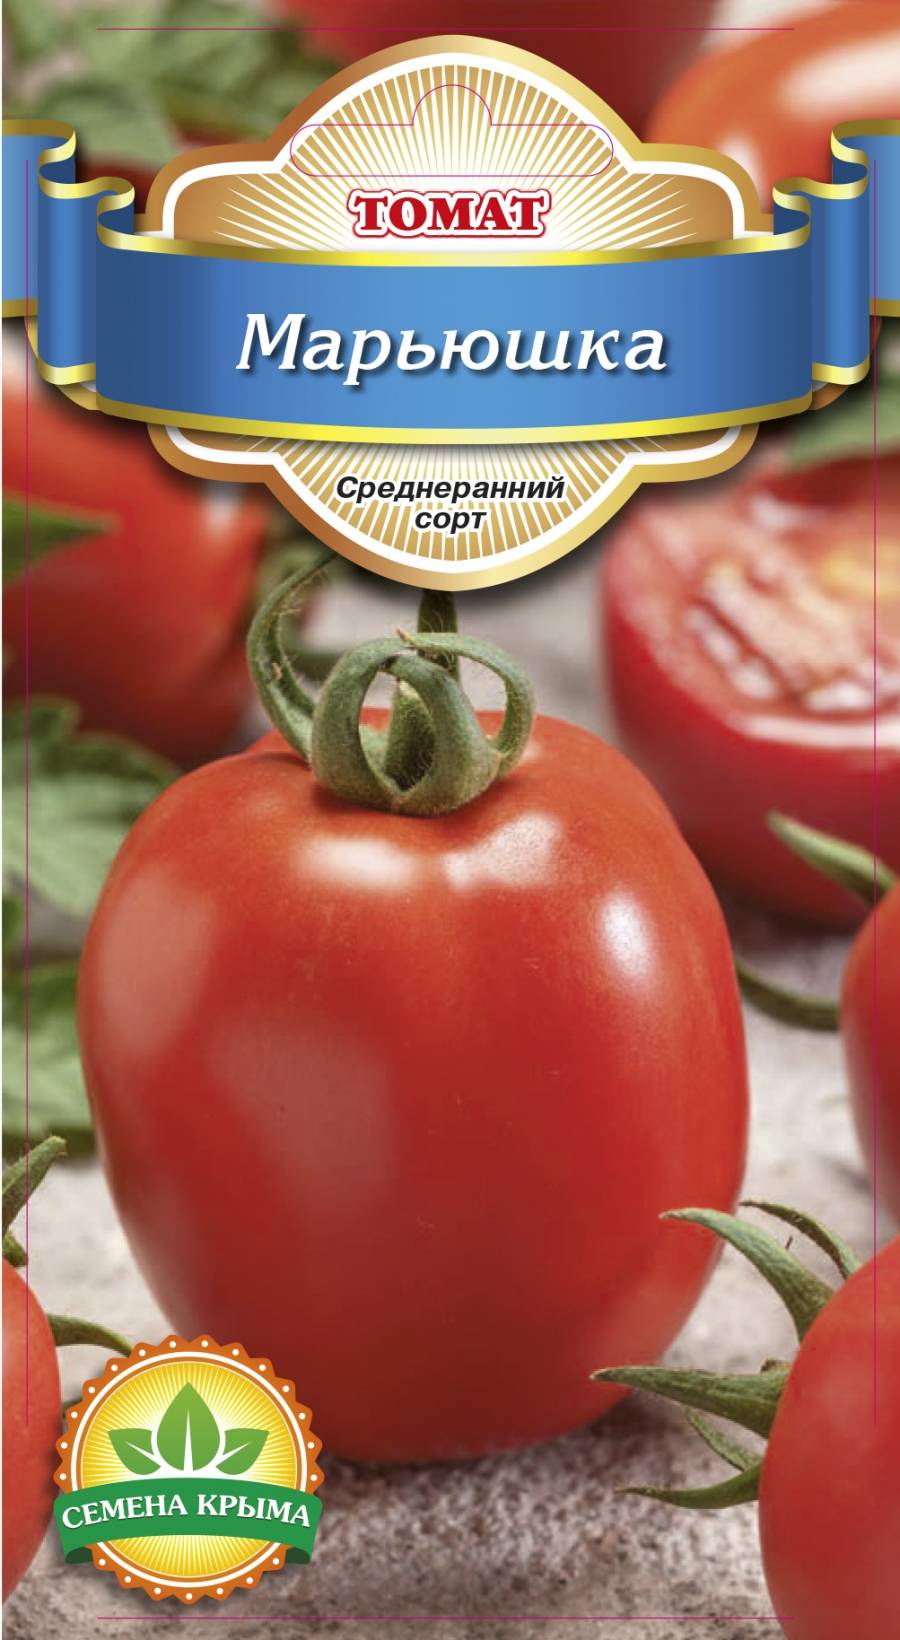 Описание сорта томата крымская роза, особенности выращивания и урожайность